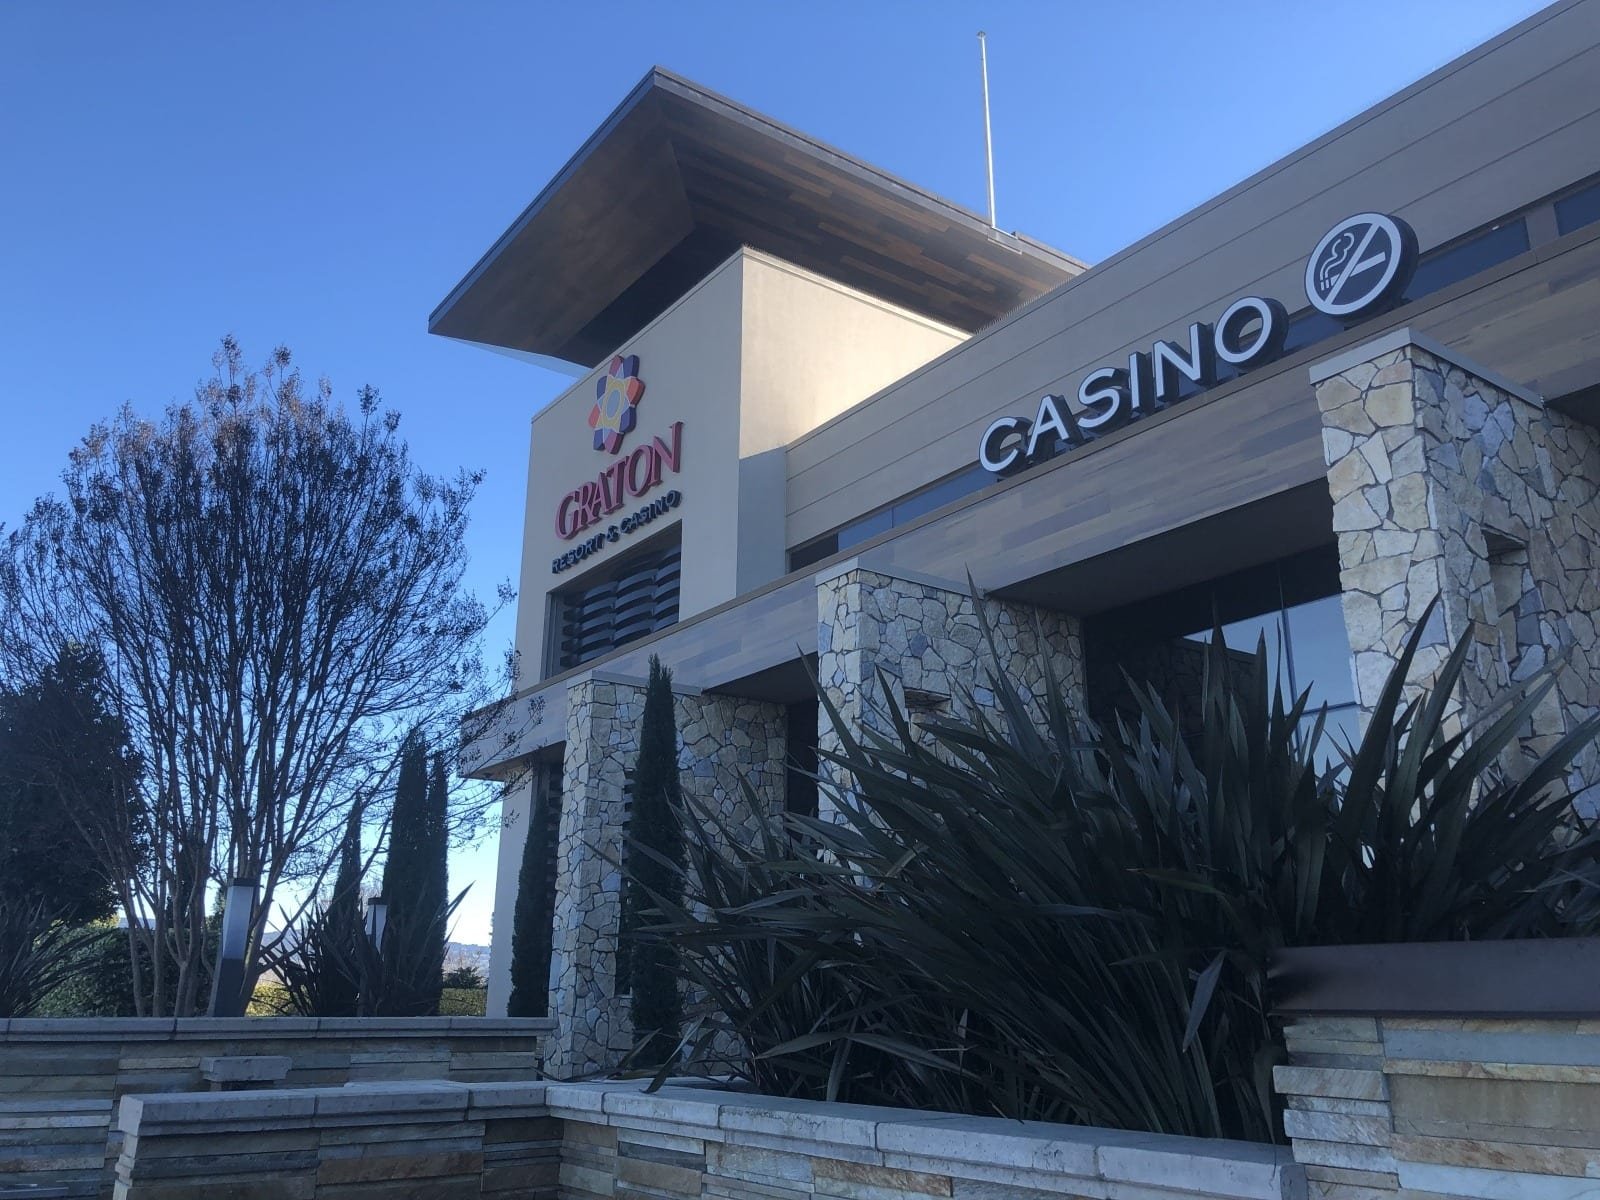 Graton Resort Casino